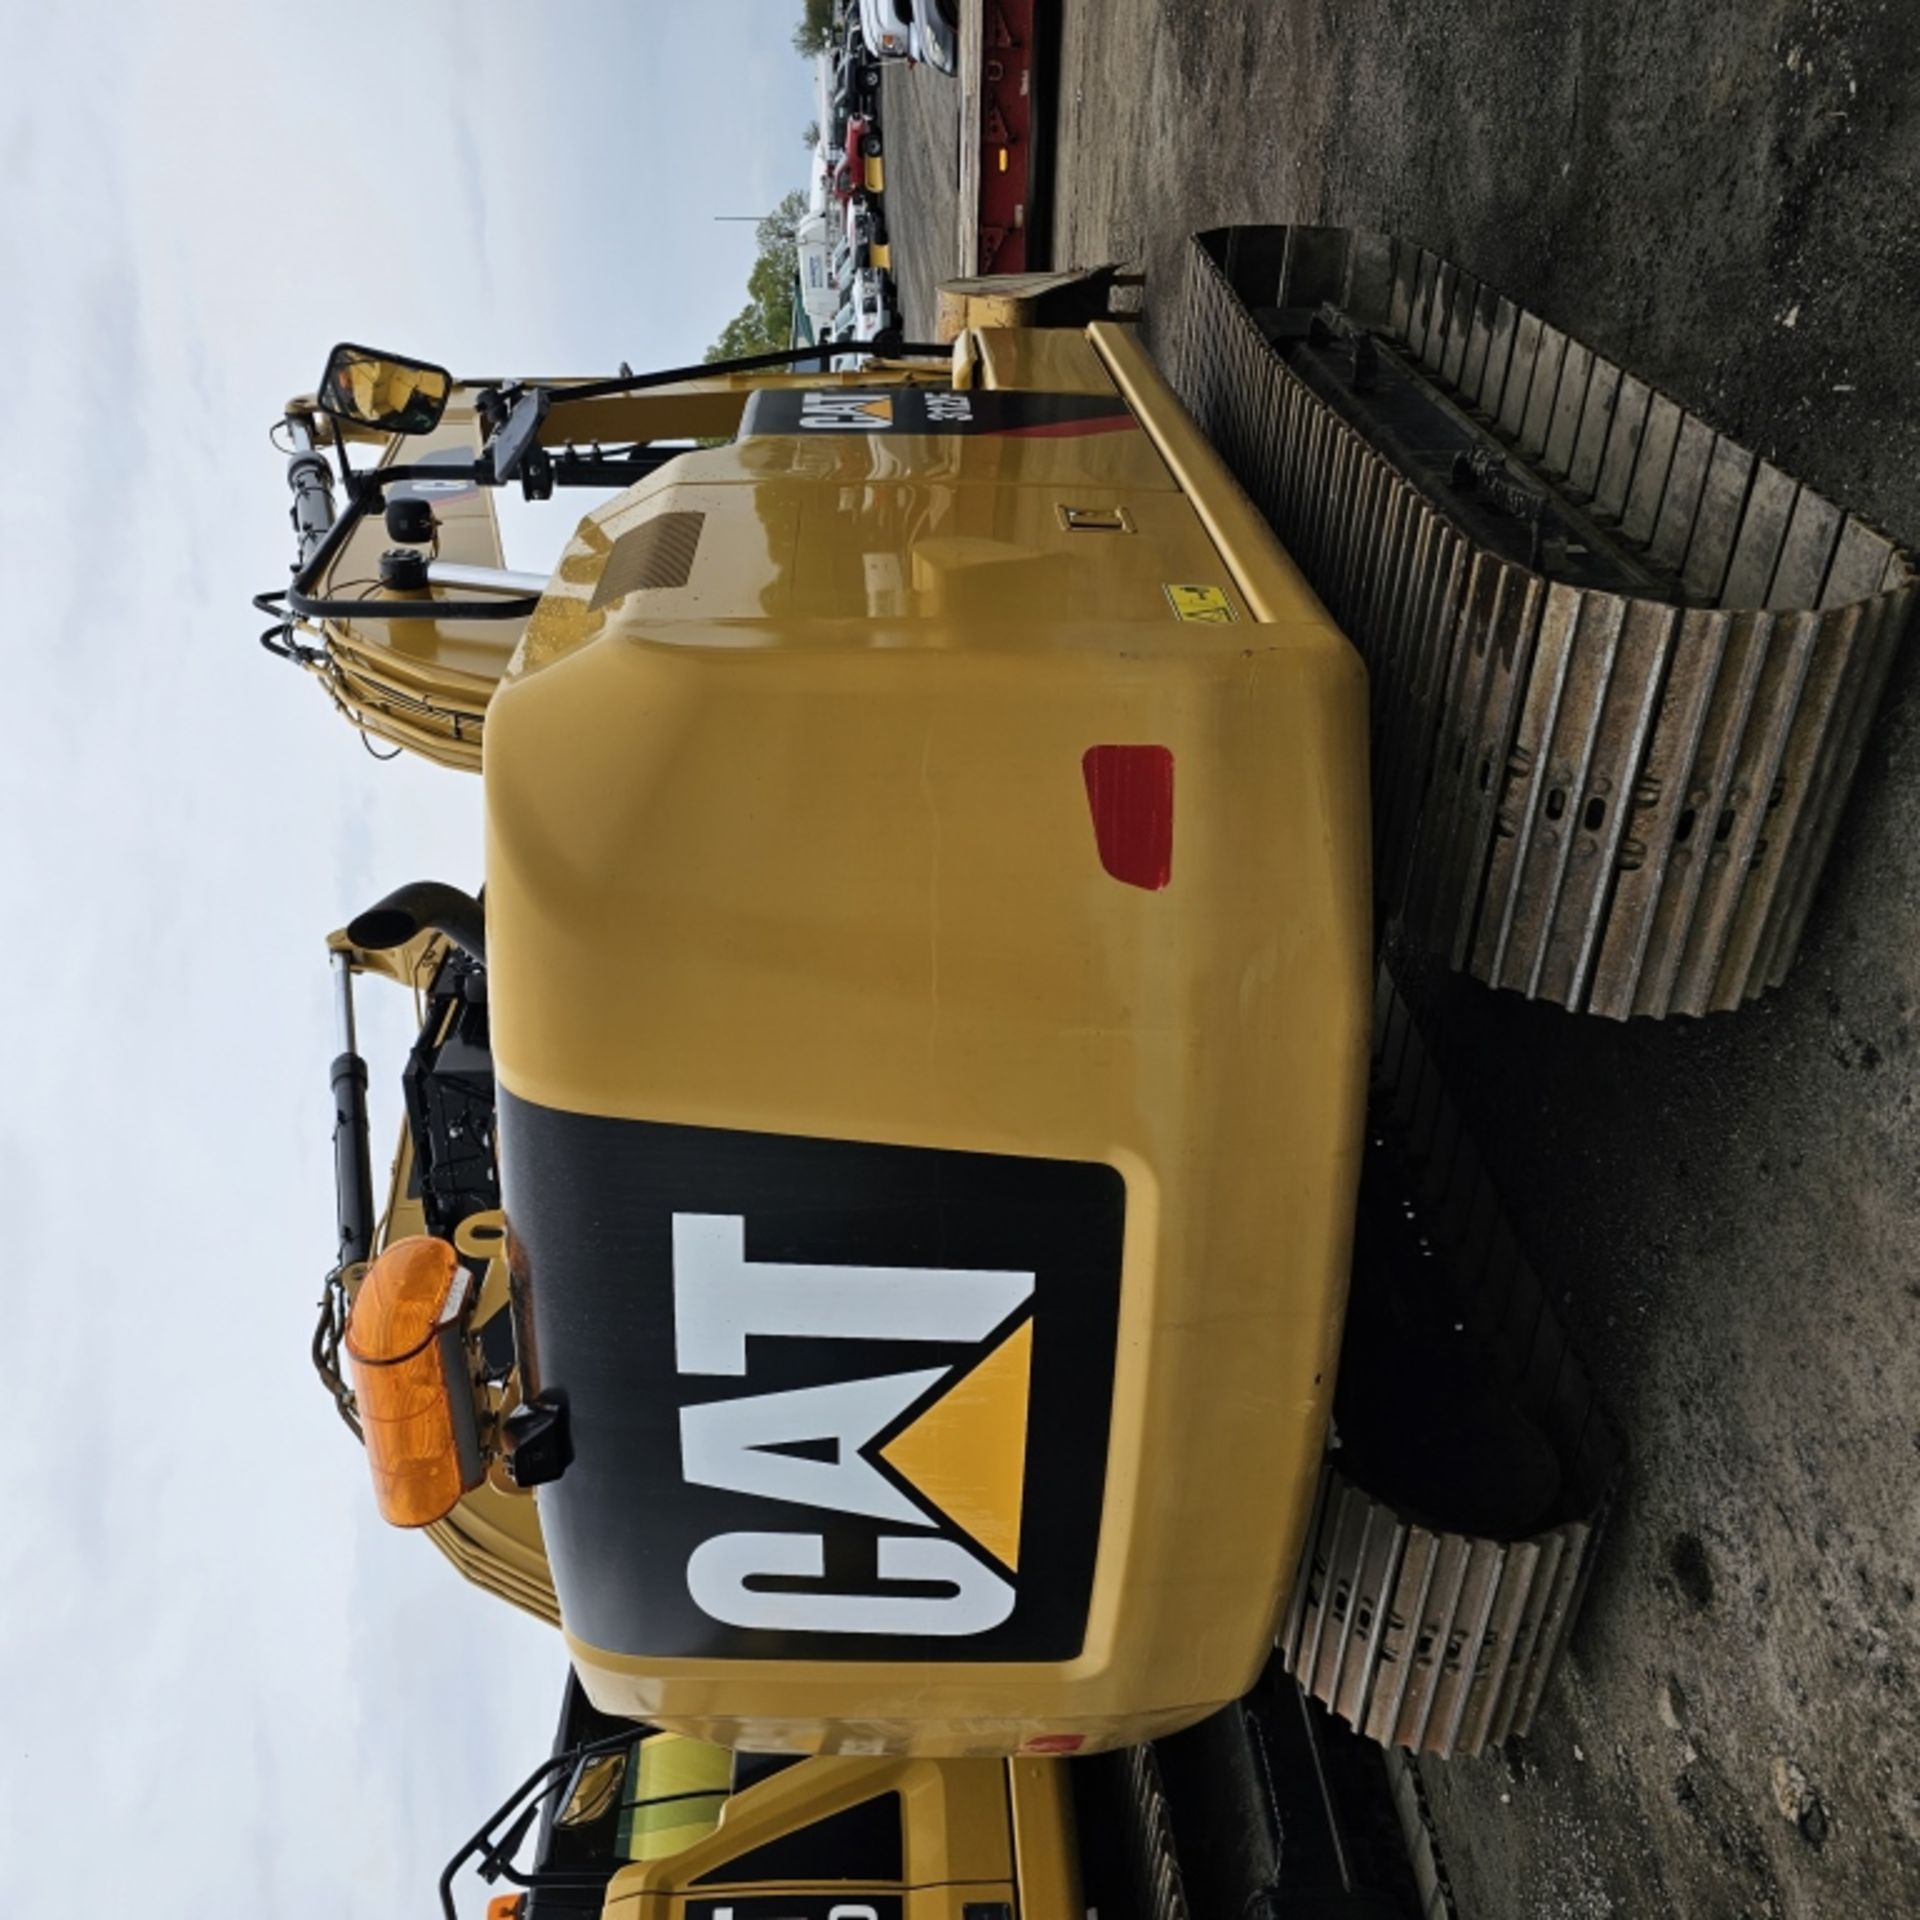 2018 Cat 312f Excavator - Image 9 of 12